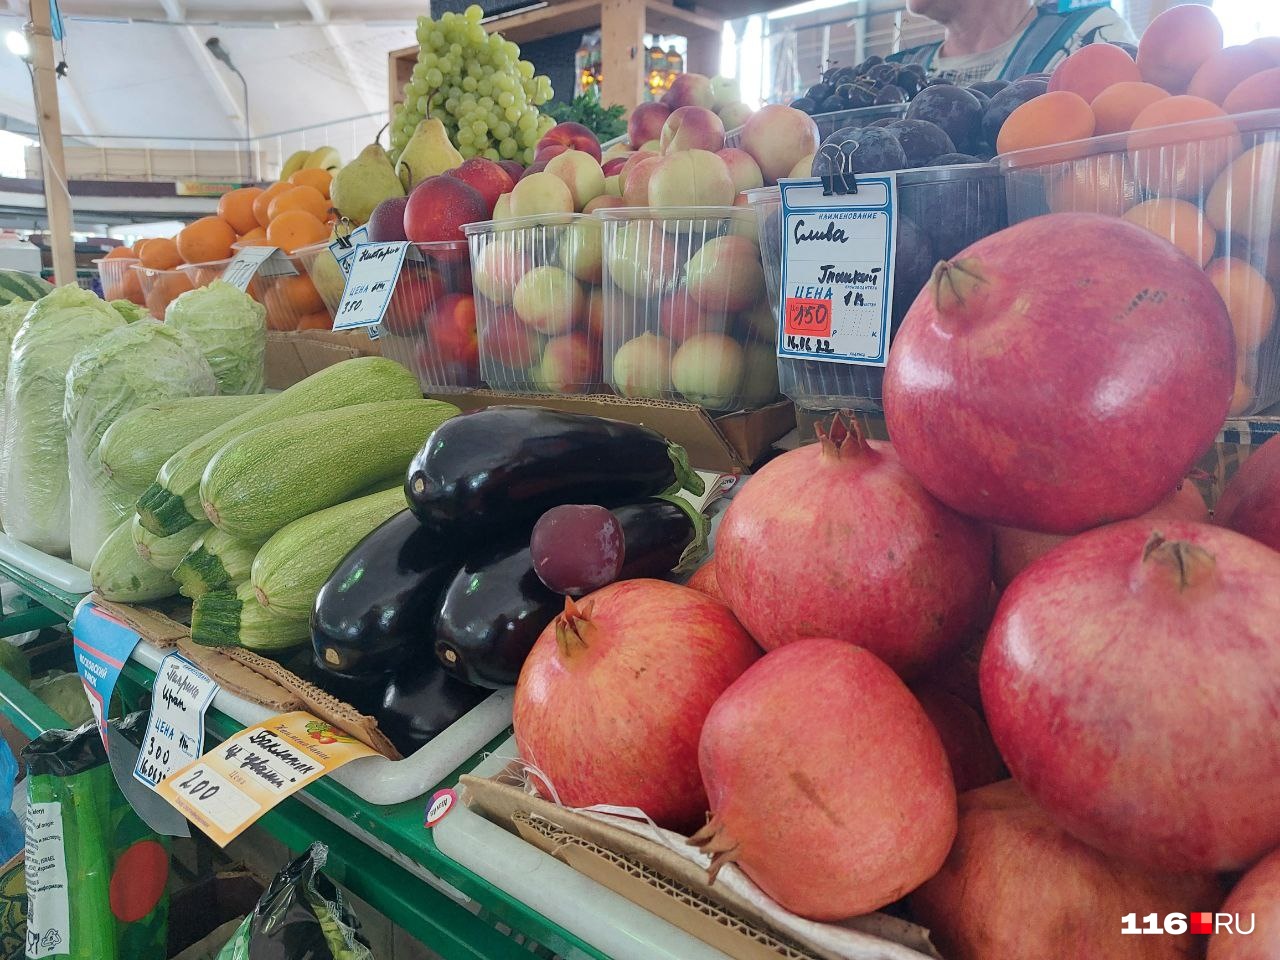 Так выглядит прилавок одного из немного отделов с овощами и фруктами внутри центрального павильона на Московском рынке